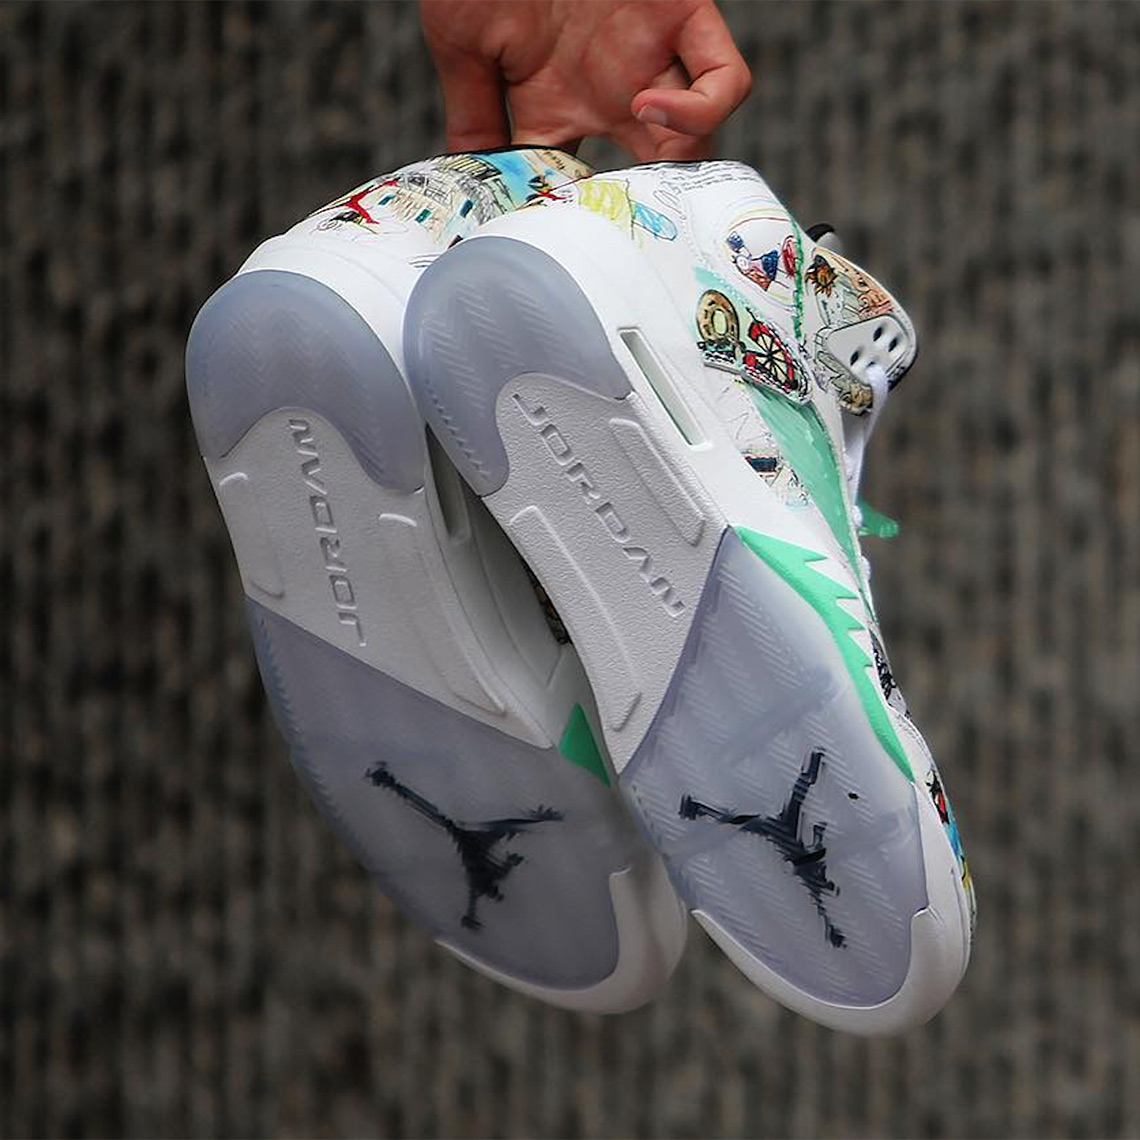 The Air Jordan 5 WINGS Is Releasing In September - SneakerNews.com